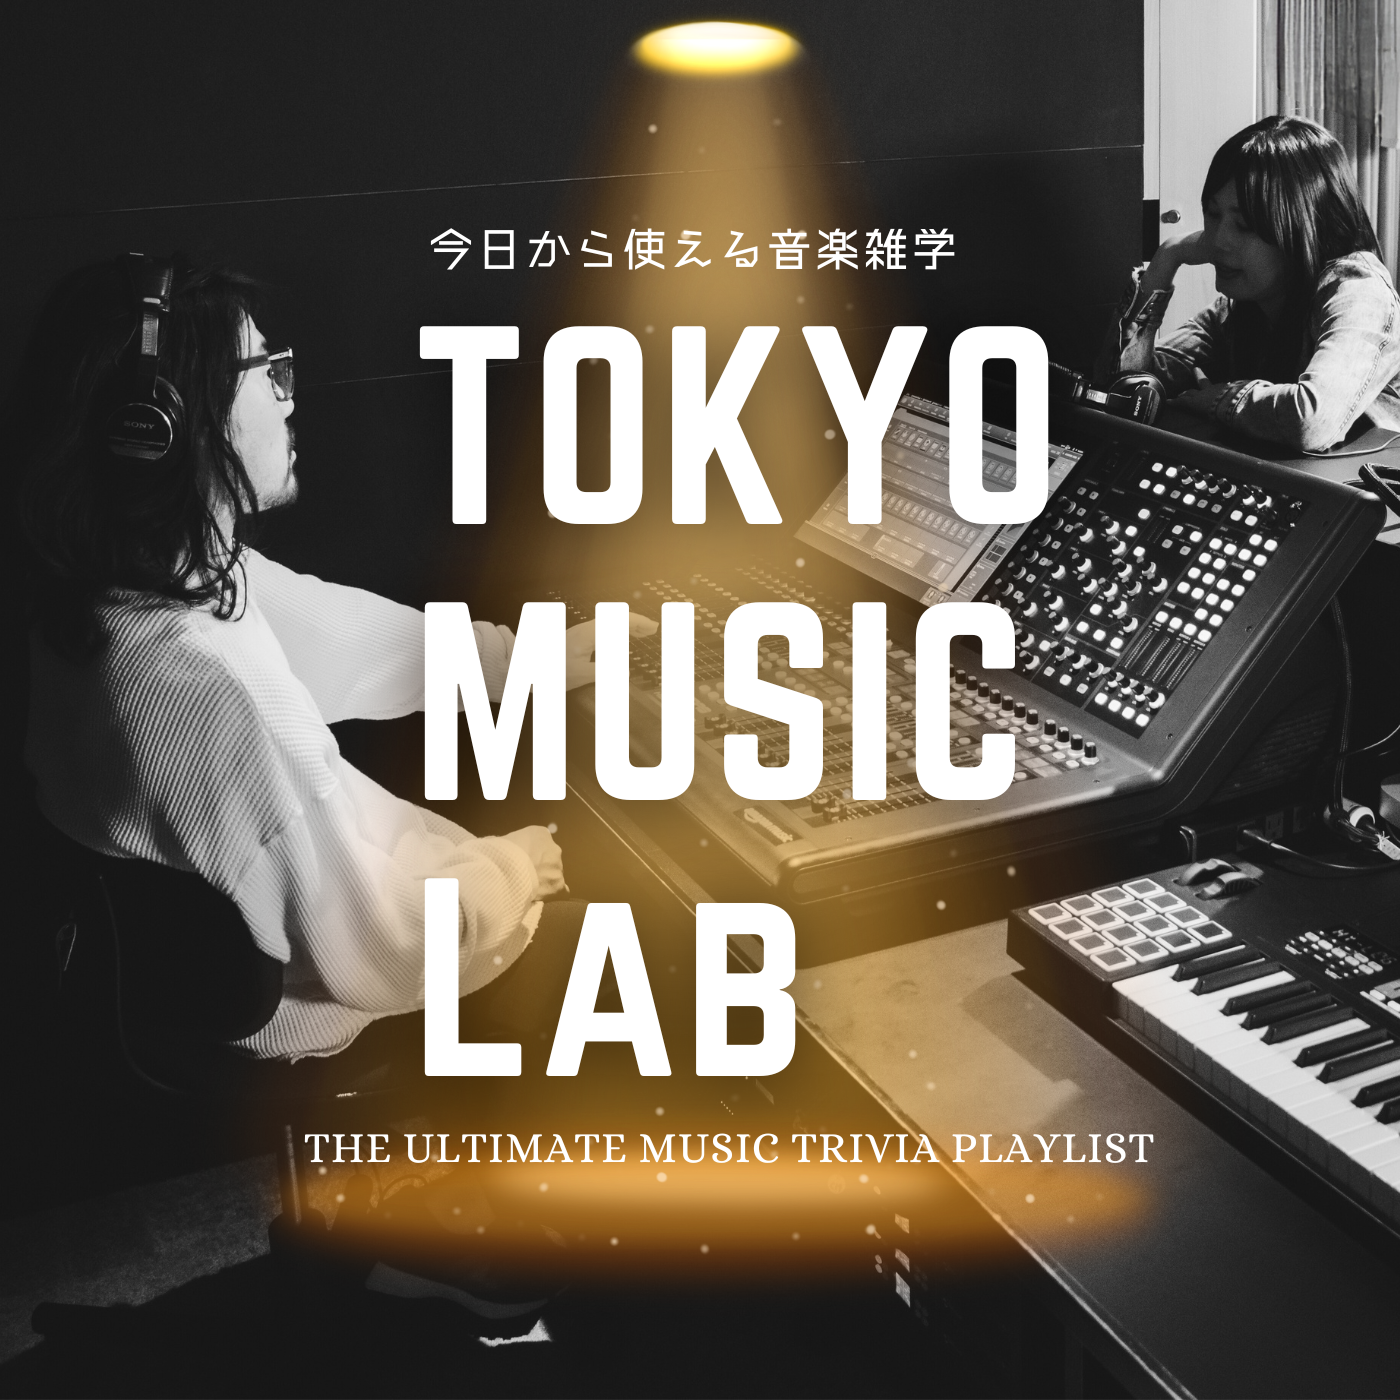 TOKYO MUSIC LAB